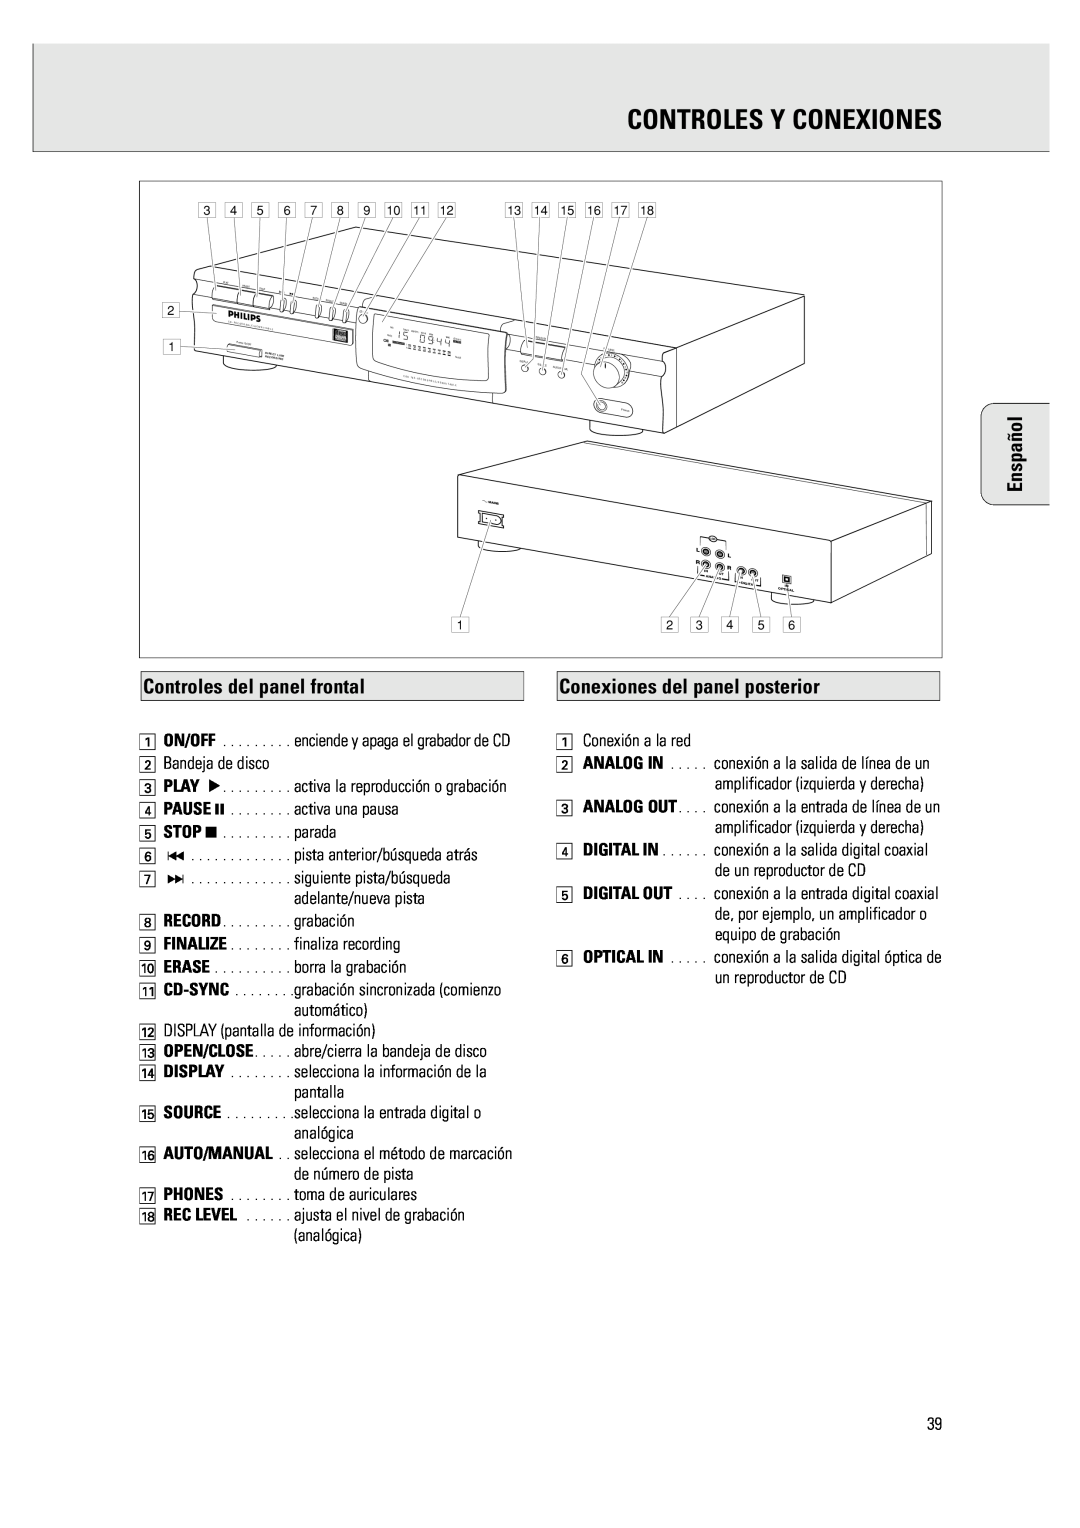 Philips CDR 760 manual Controles Y Conexiones, Controles del panel frontal, Conexiones del panel posterior, Enspañol 